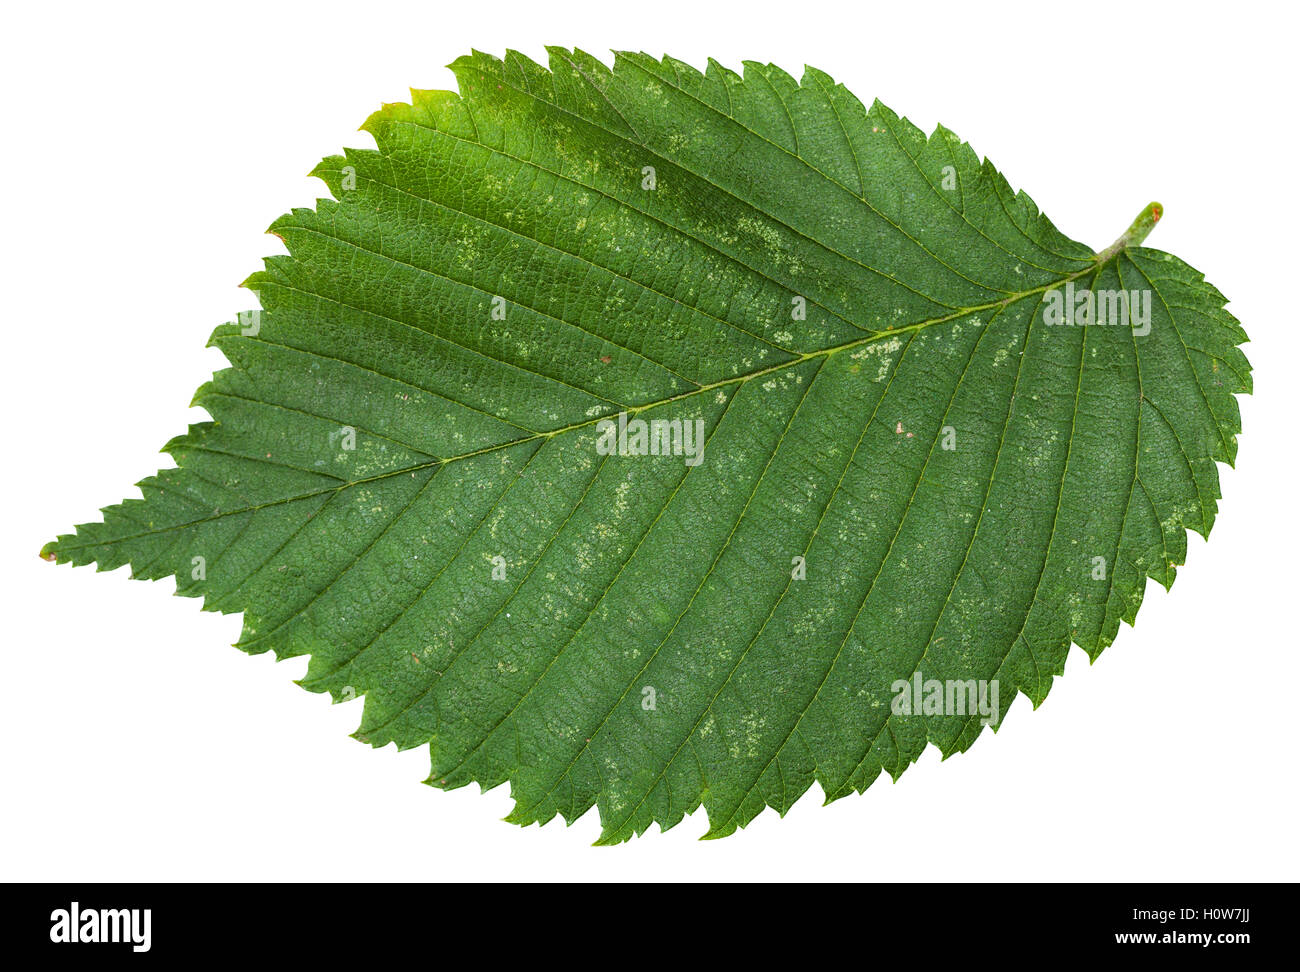 fresh leaf of Elm tree (ulmus laevis, european white elm, fluttering elm, spreading elm, stately elm, russian elm) isolated on w Stock Photo